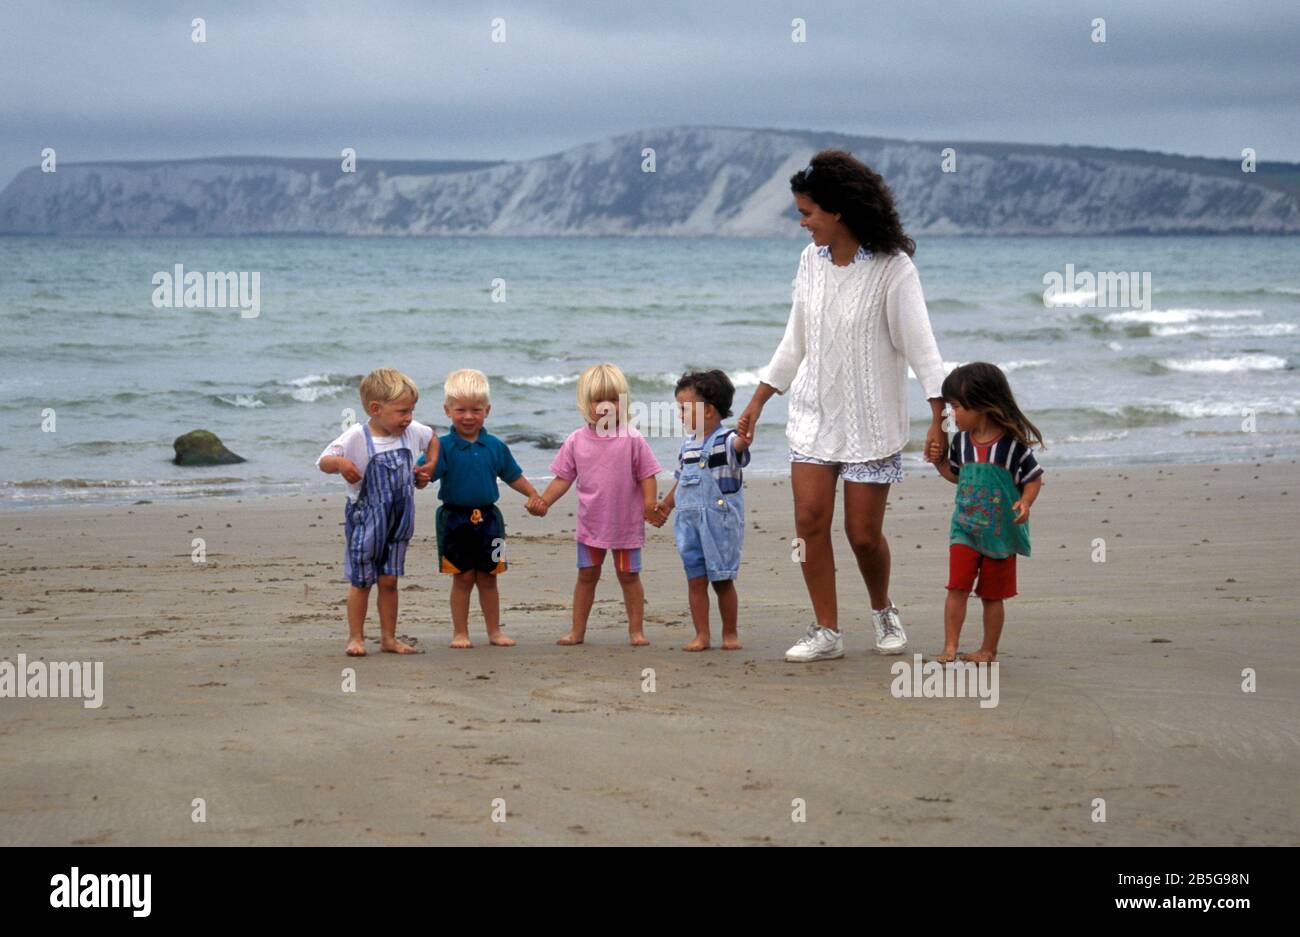 Frau, die mit 5 Kleinkindern am übergiebelten Tag am Strand spazieren geht, Insel Wight, England Stockfoto